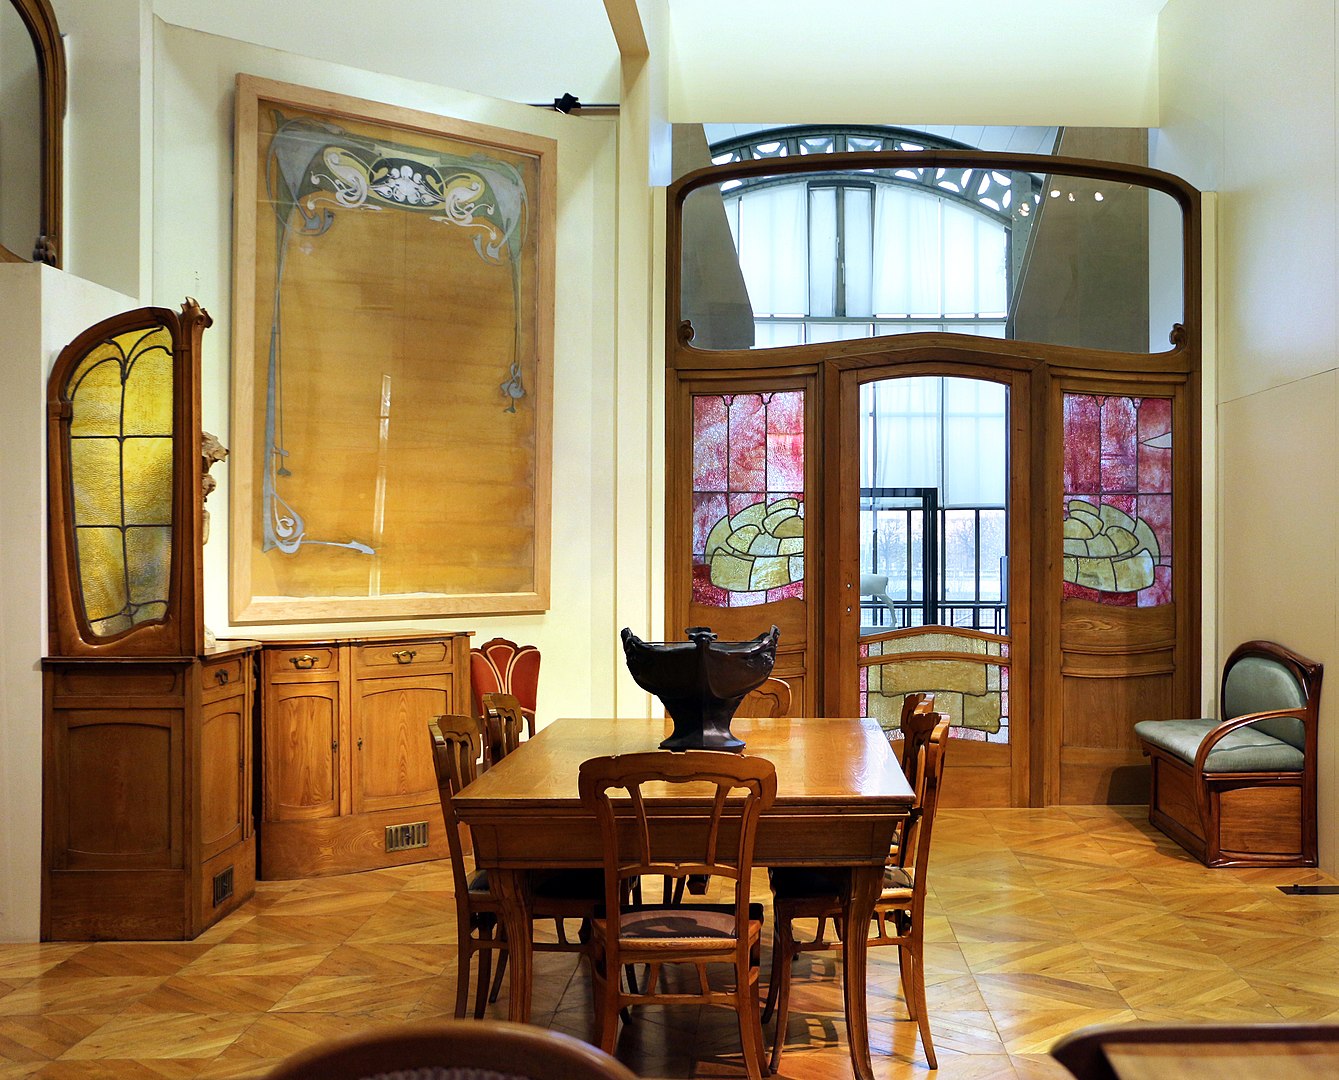 Mobiliário do Hotel Aubecq, em Bruxelas, desenhado por Victor Horta, com muita madeira e linhas curvilíneas (Foto: Sailko)